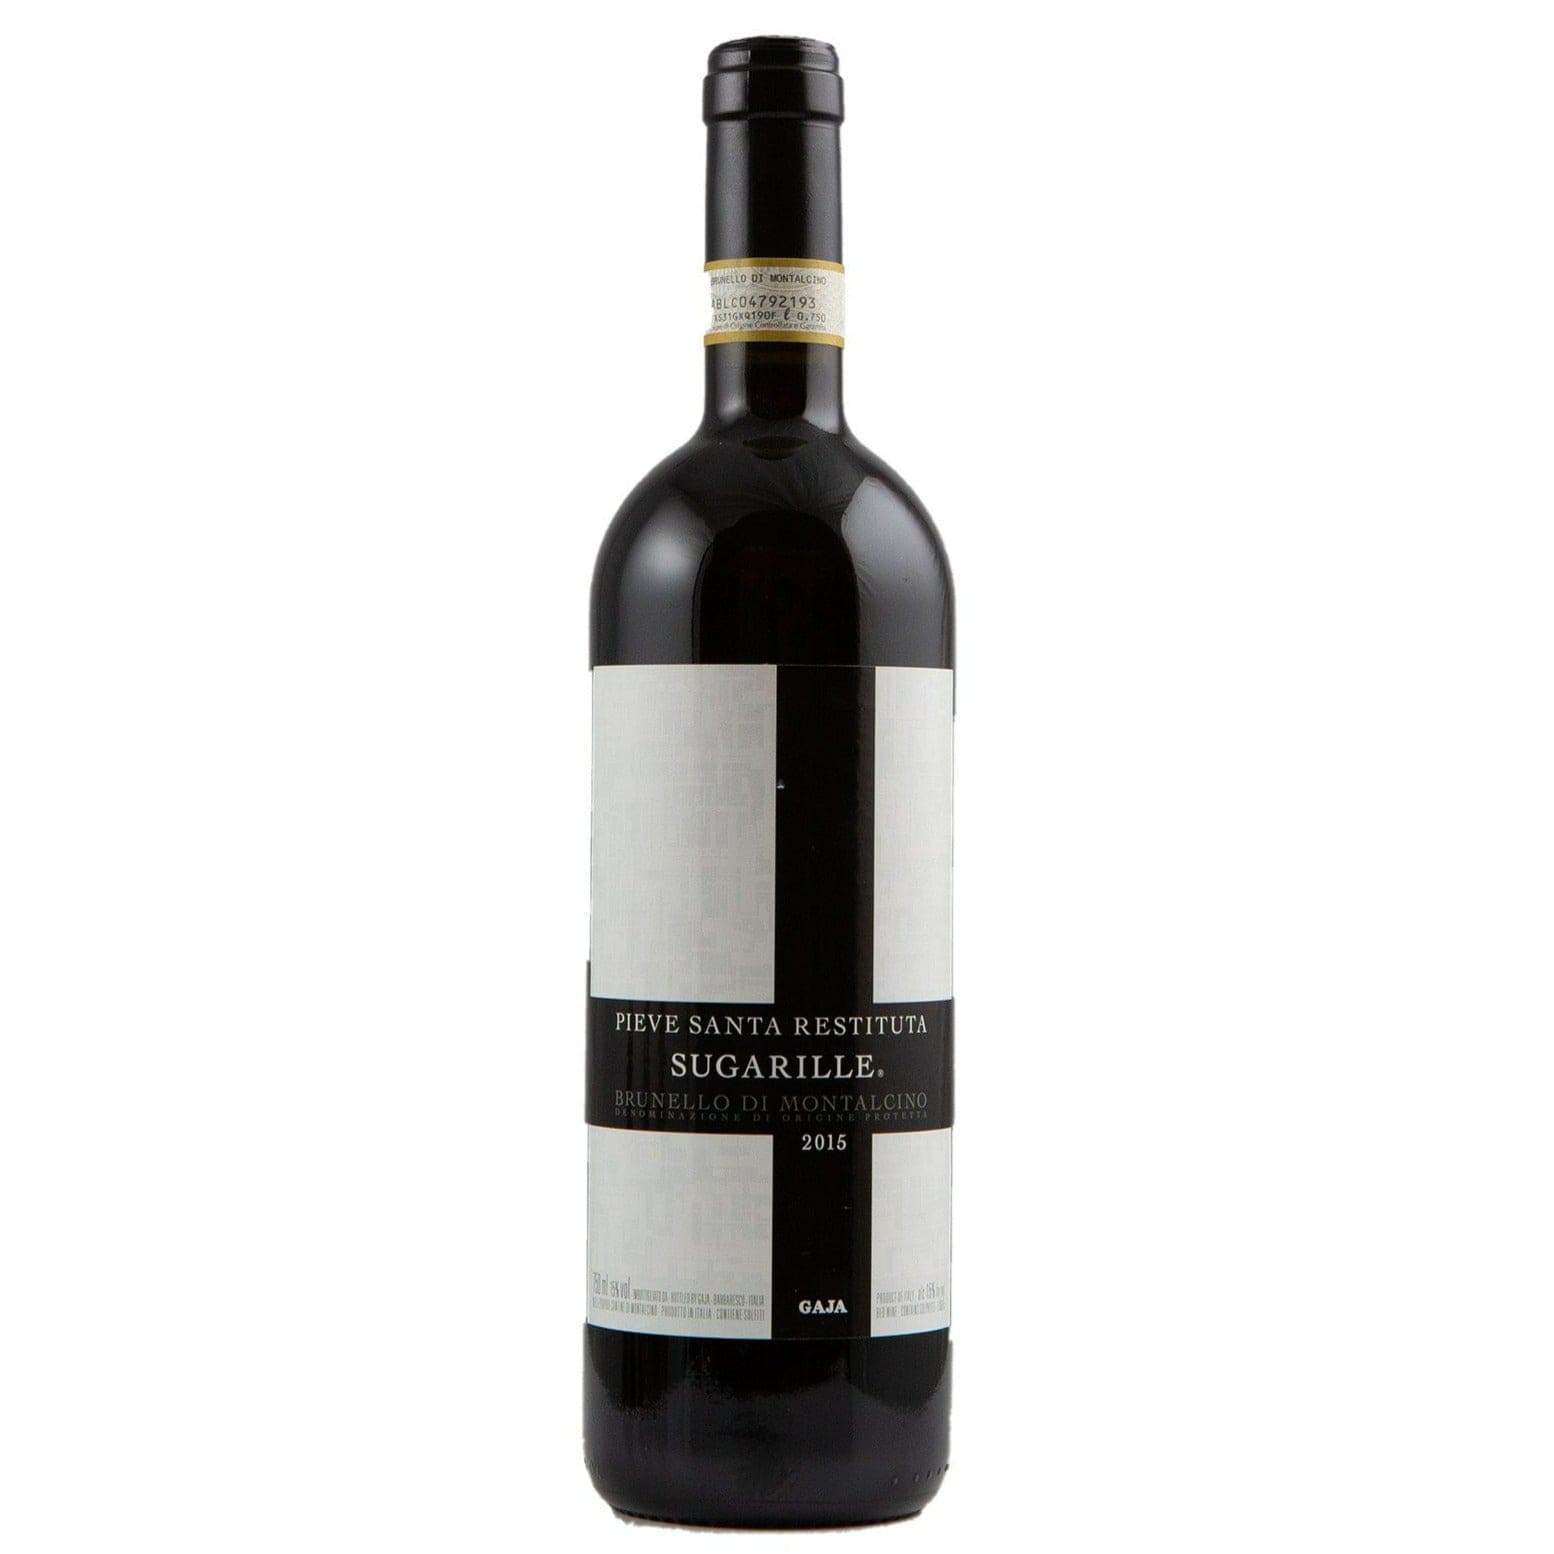 Single bottle of Red wine Gaja, Pieve Santa Restituta 'Sugarille', Brunello di Montalcino, 2015 100% Sangiovese